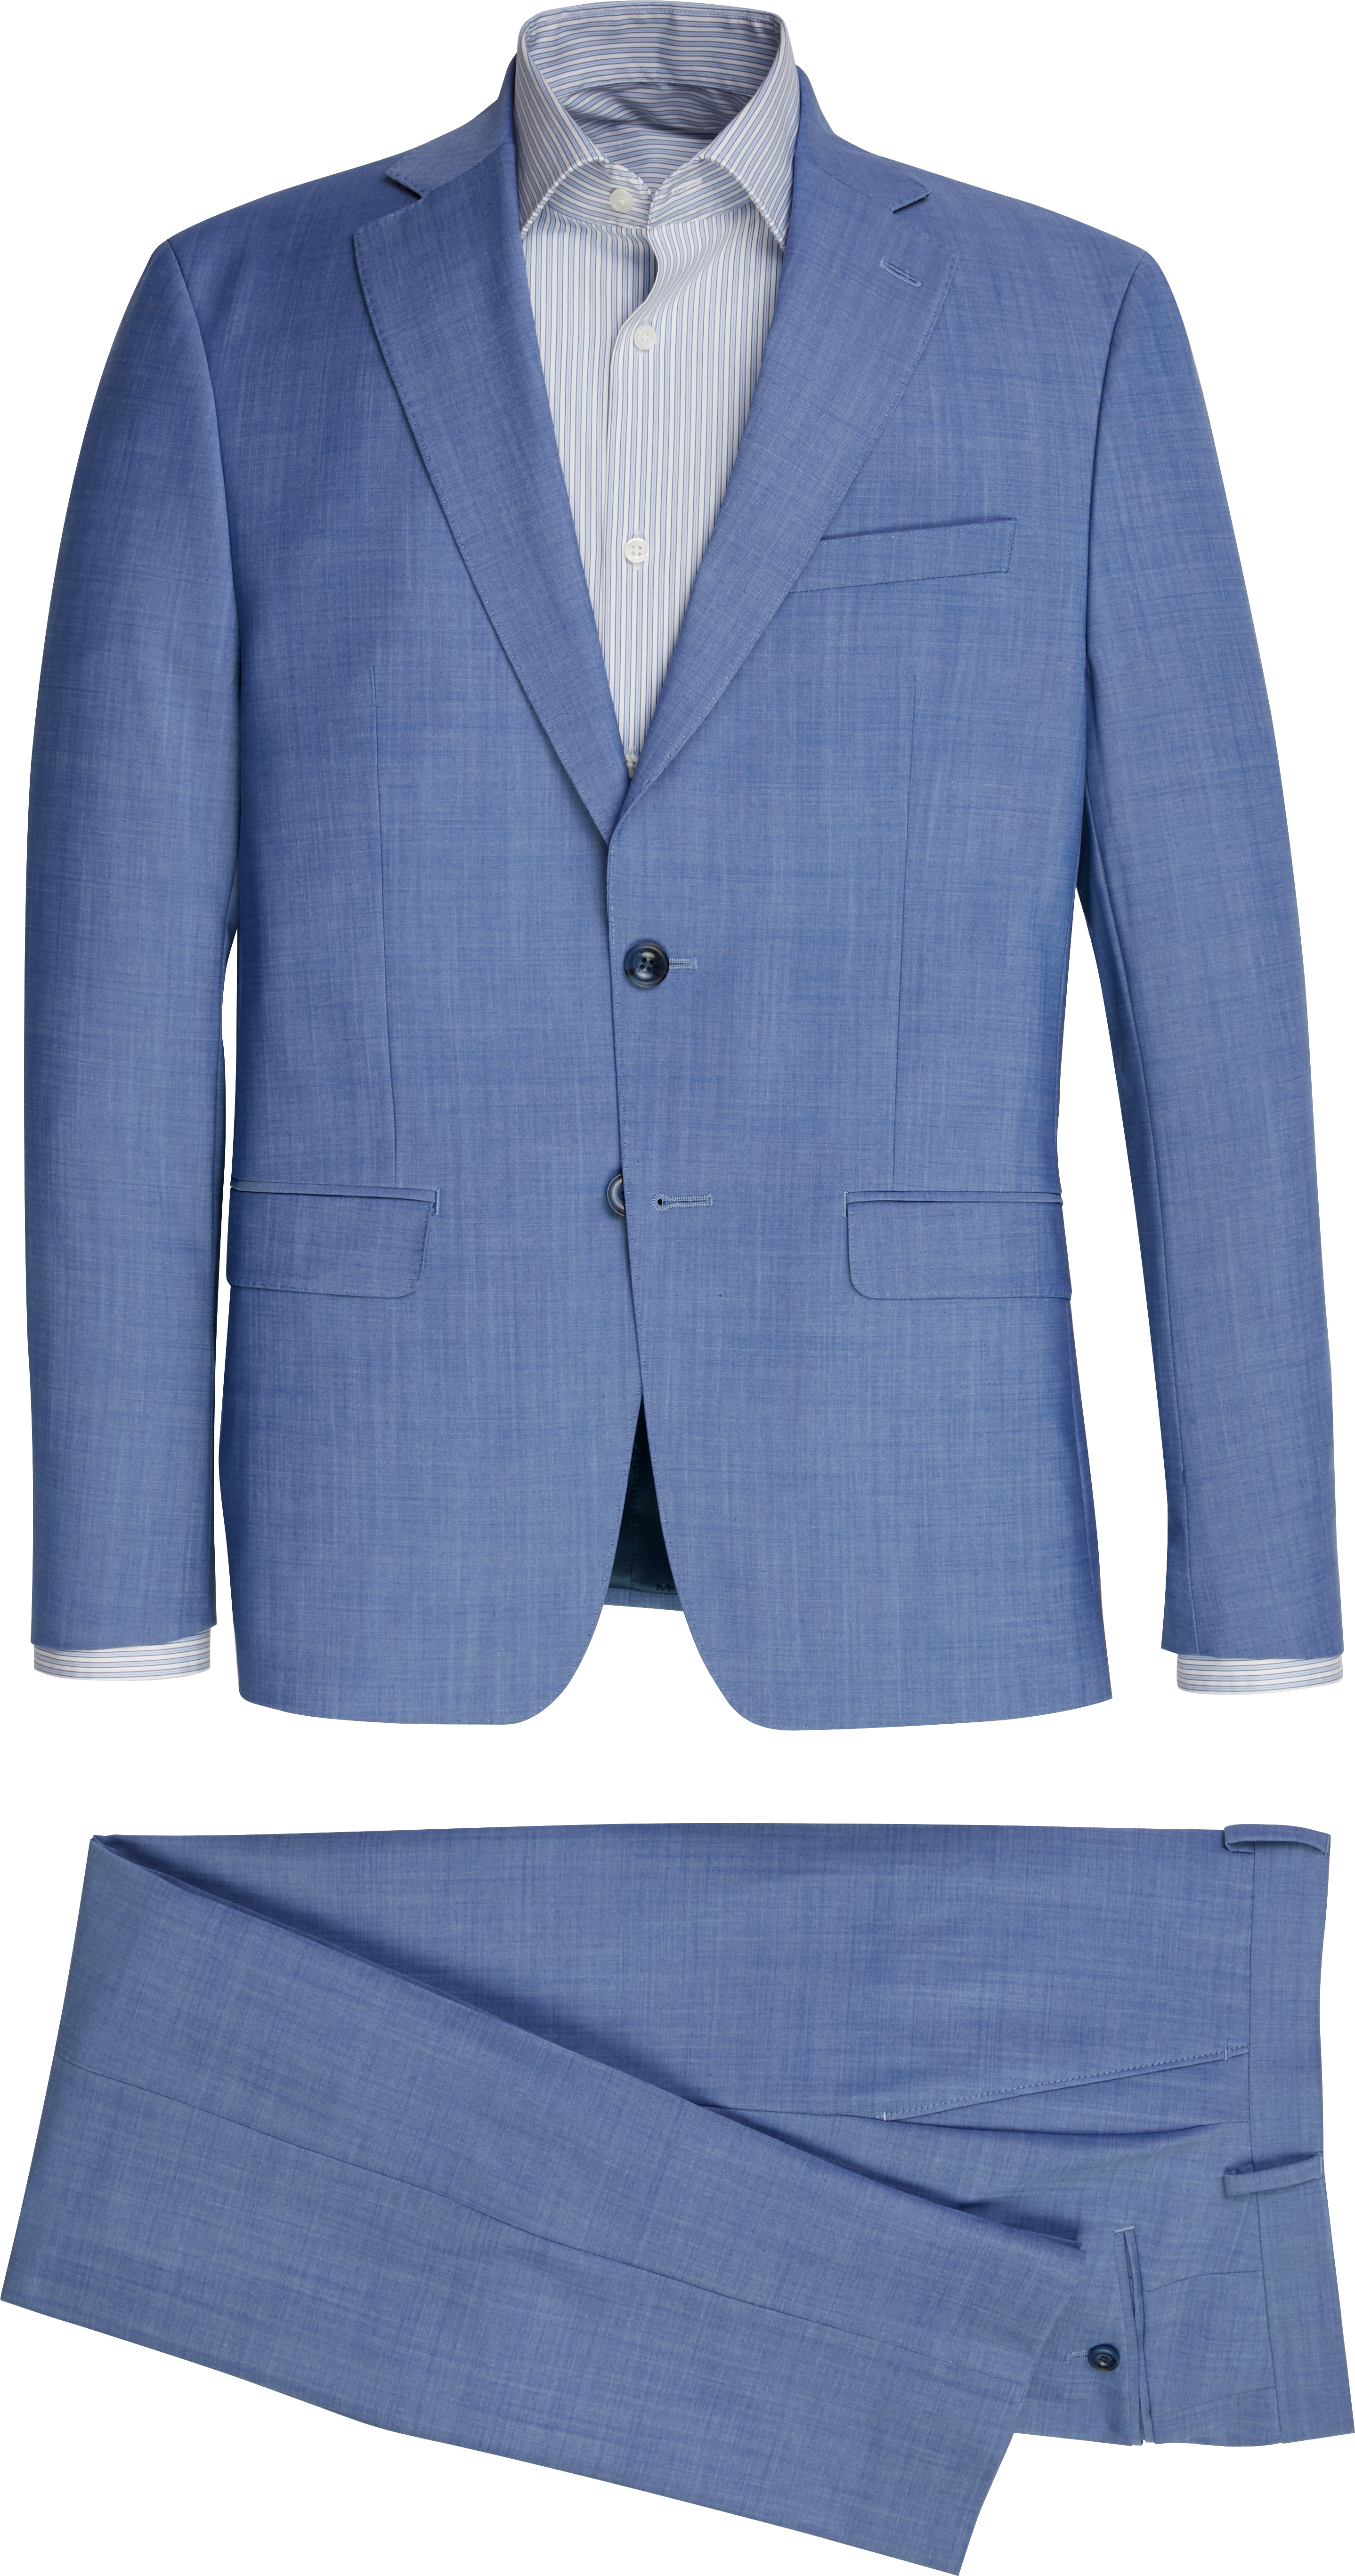 michael kors men's suit jackets